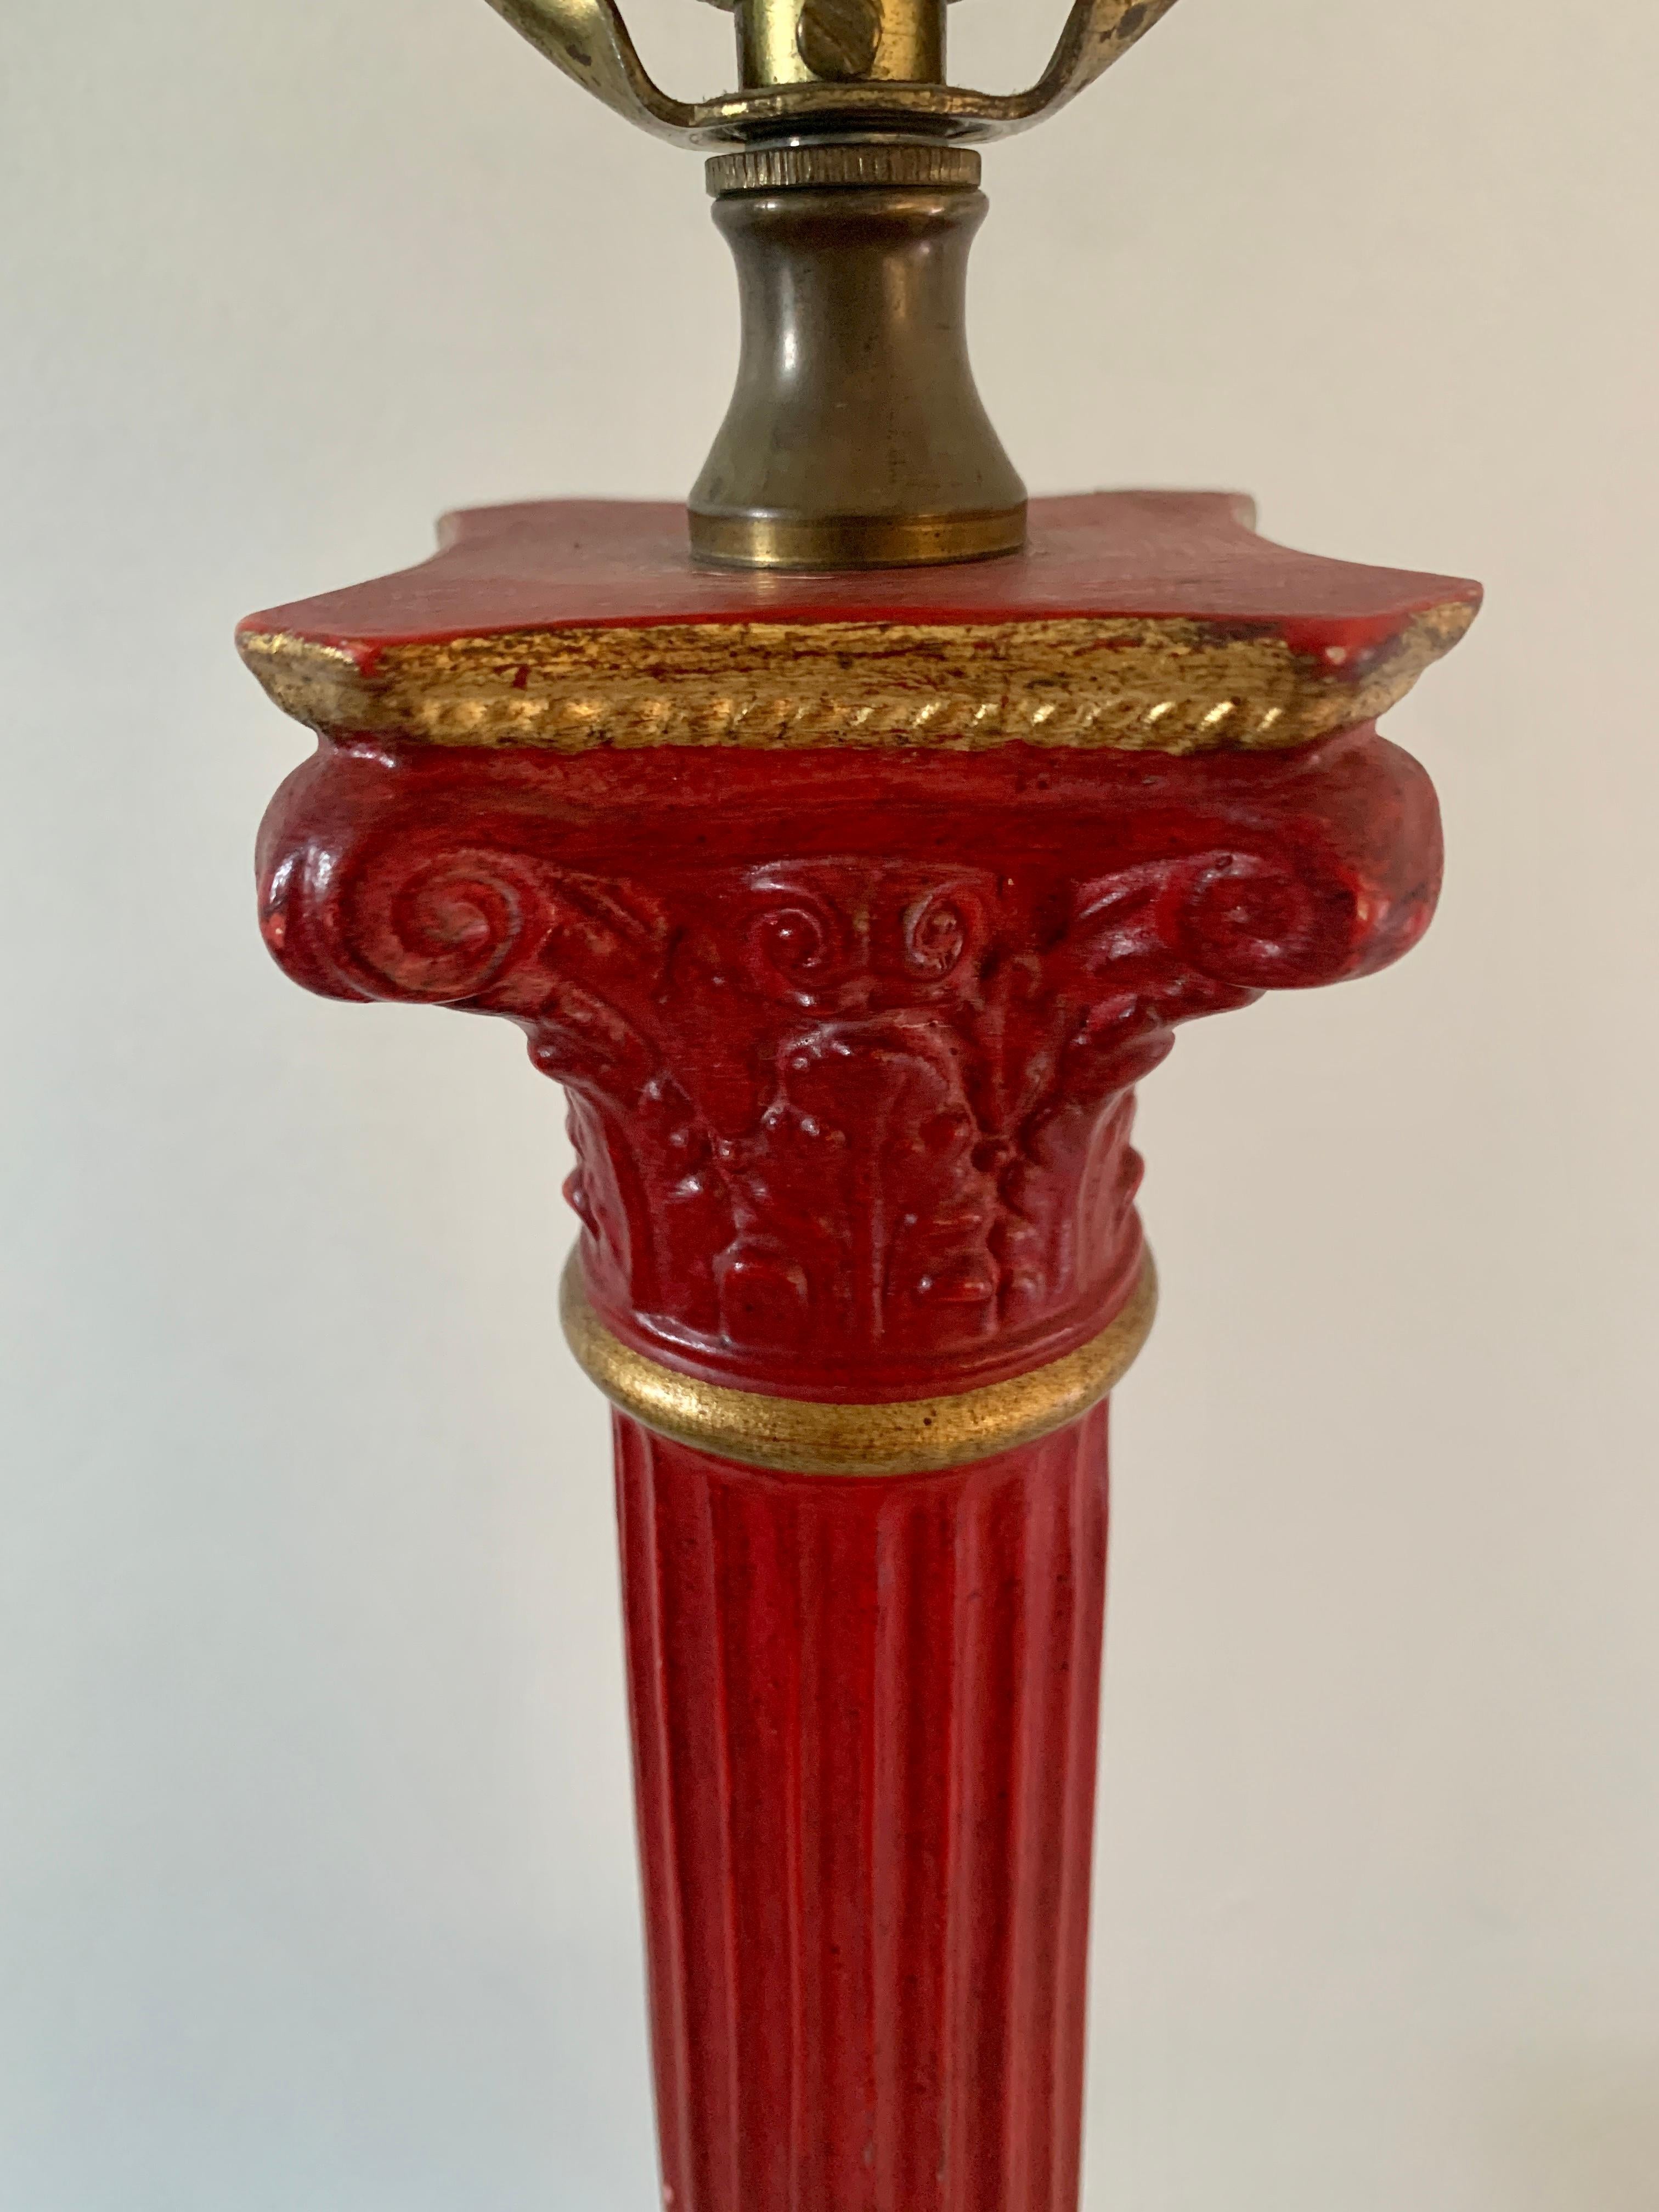 Une magnifique lampe de table de style néoclassique à colonne corinthienne rouge et or avec accent de couronne de laurier.

USA, Milieu du 20ème siècle

Mesures : 5,25 